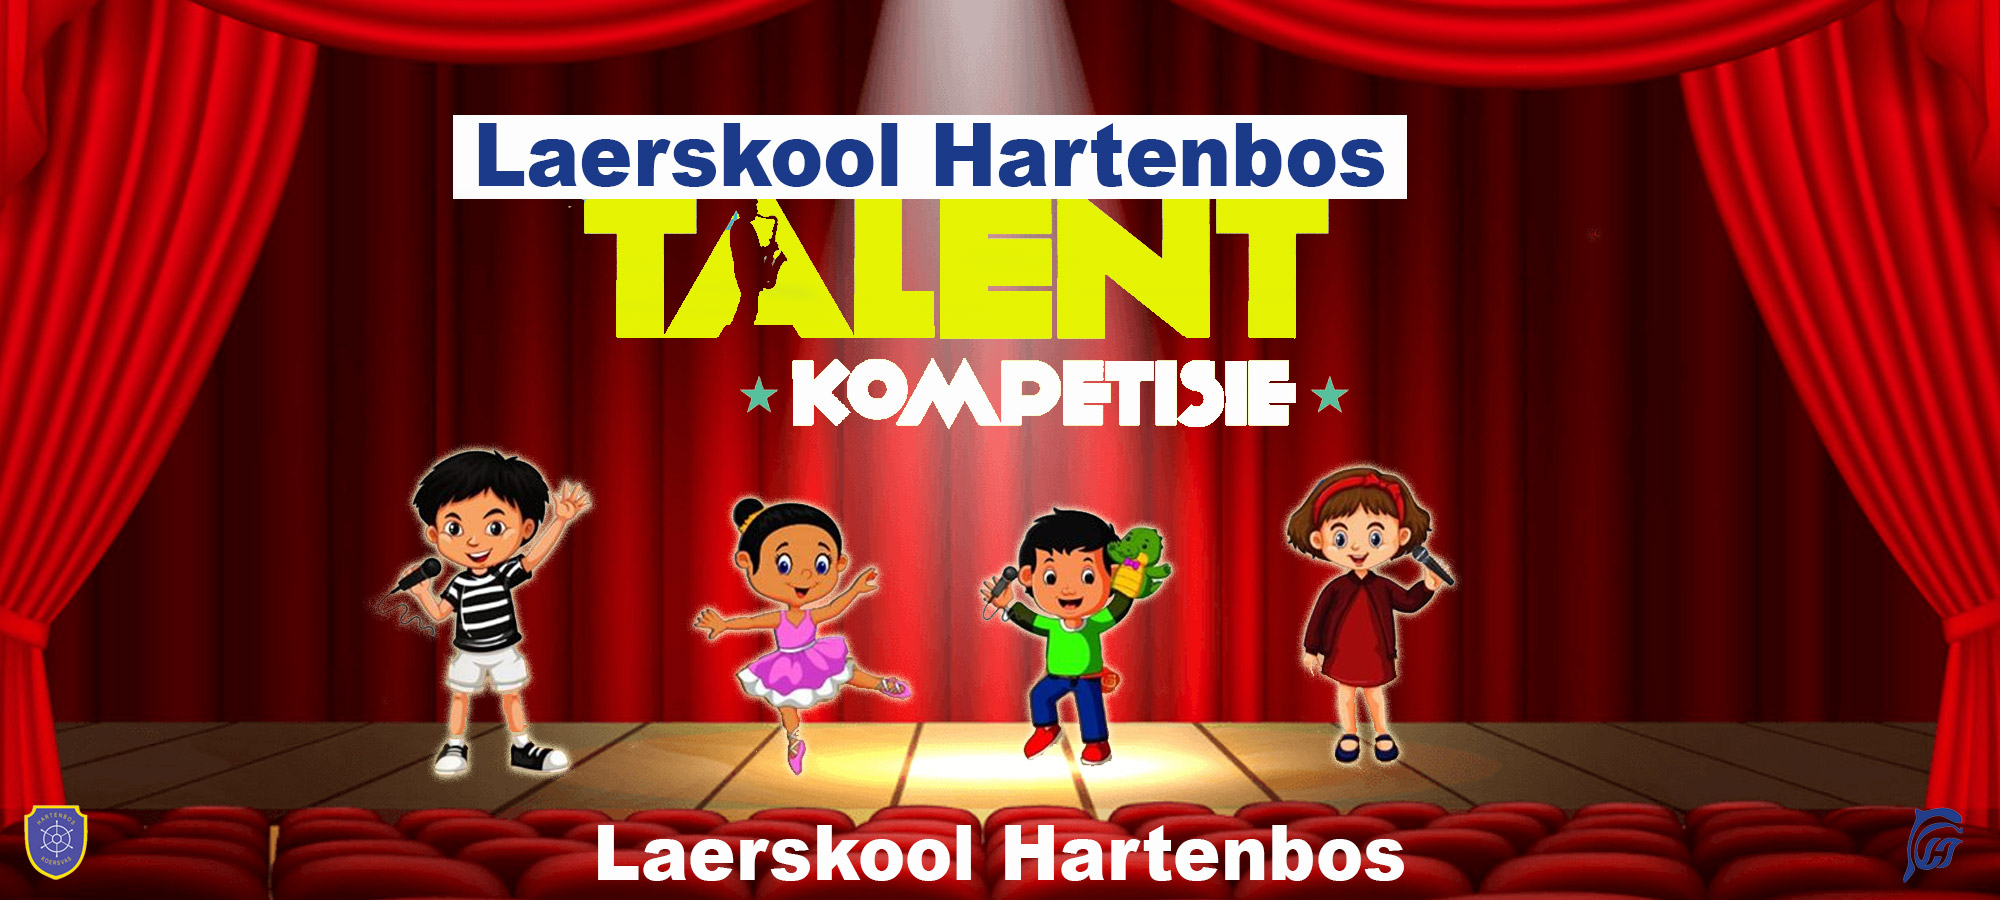 Laerskool Hartenbos - Talent Kompetisie